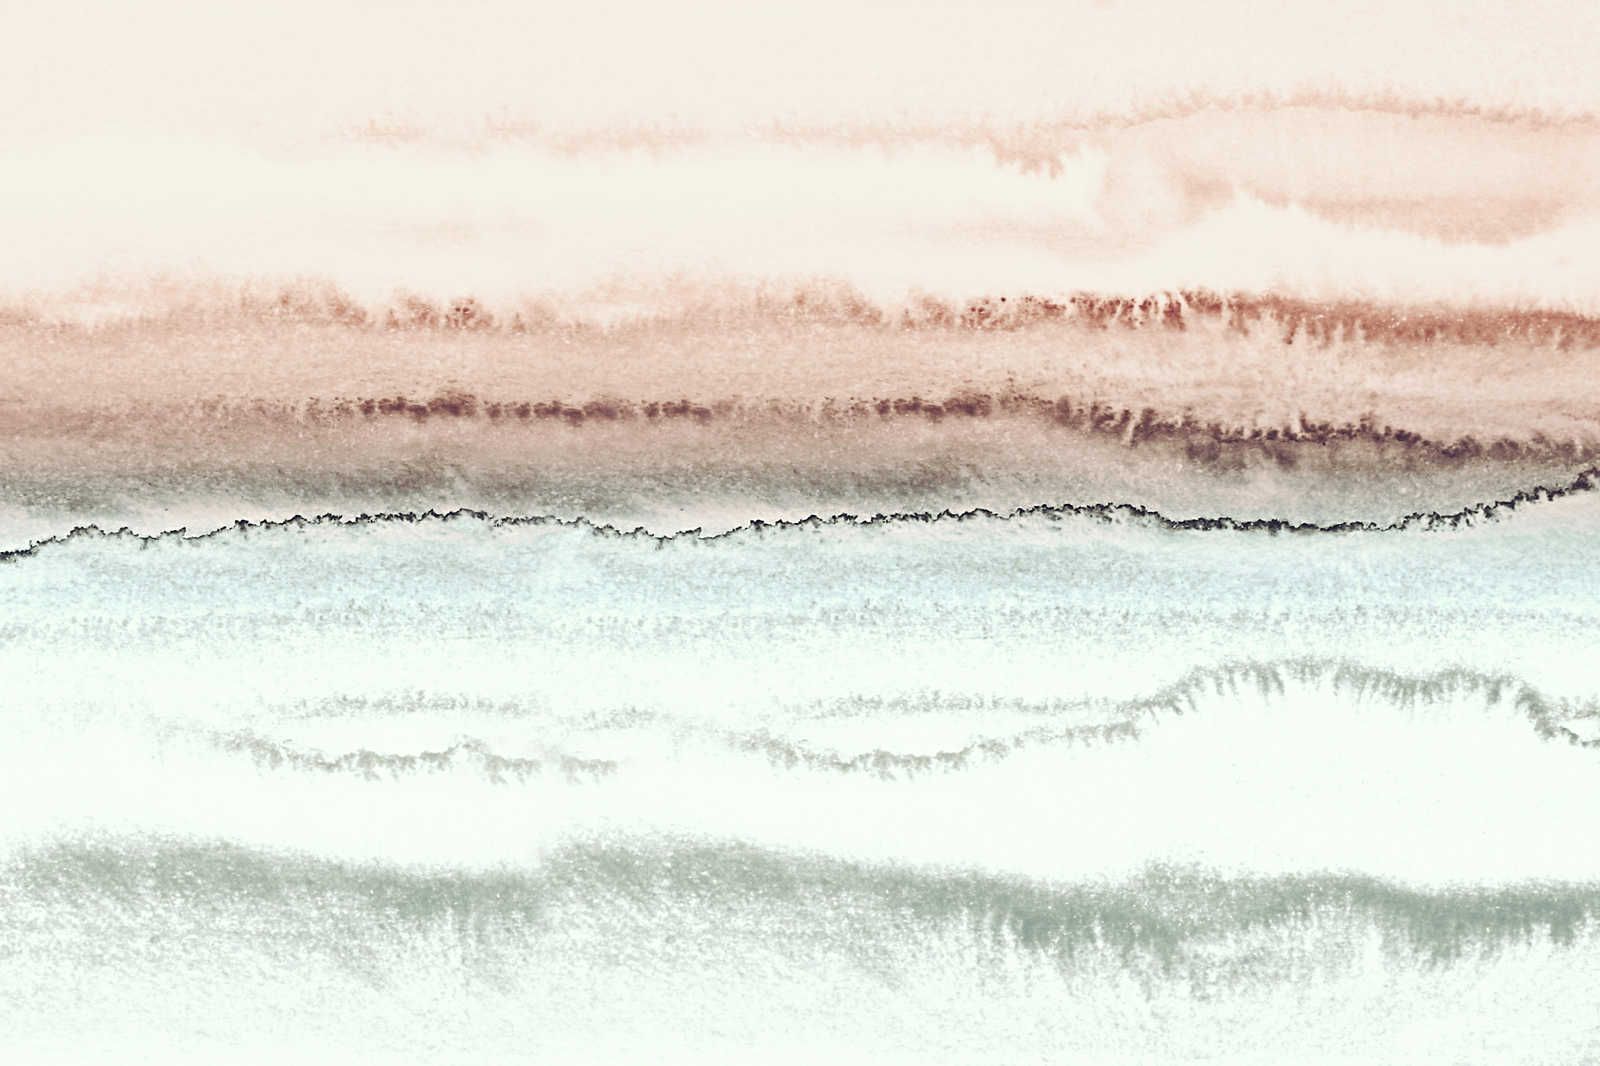             Pittura su tela ad acquerello con paesaggio astratto e gradiente - 1,20 m x 0,80 m
        